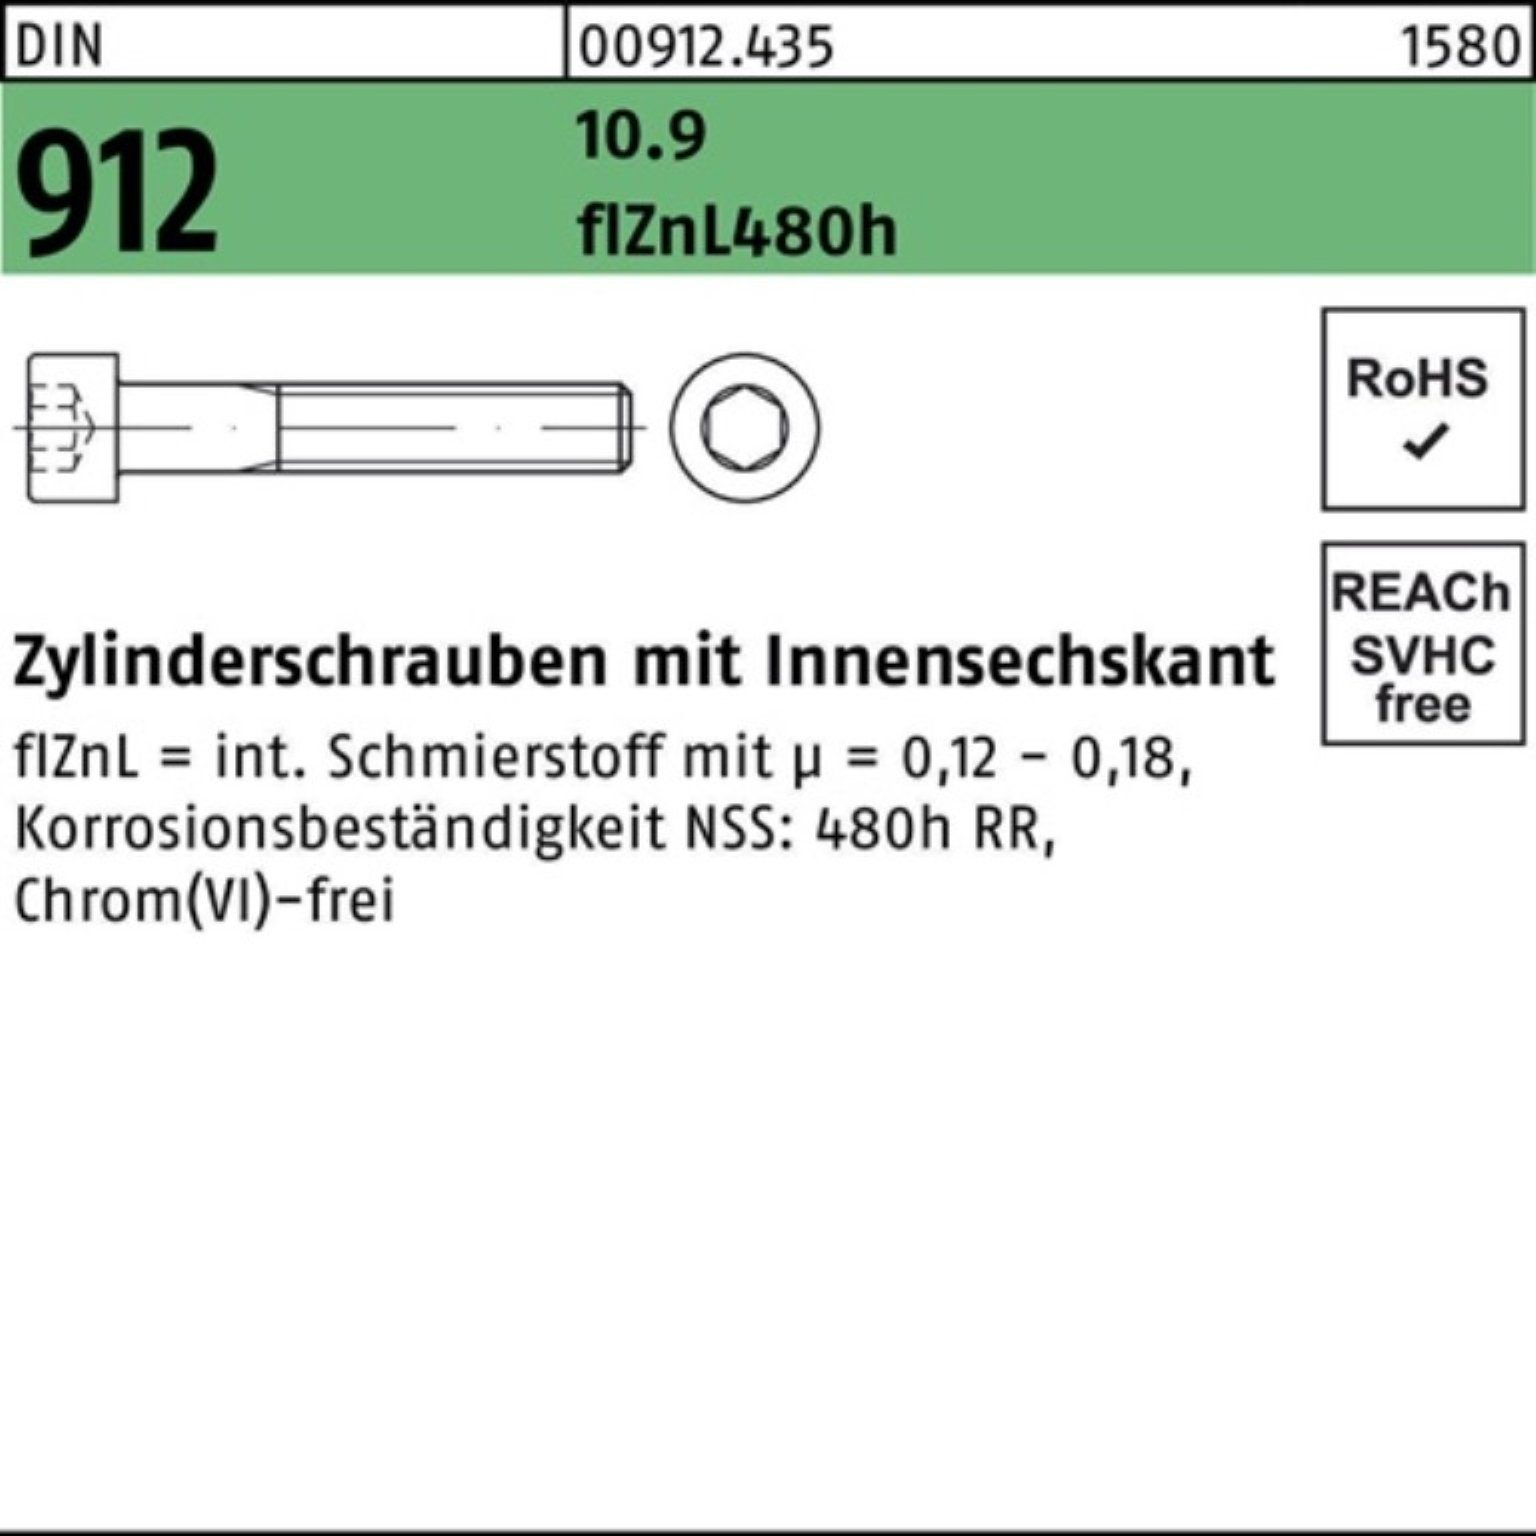 10.9 Reyher Pack 912 Zylinderschraube Innen-6kt flZnL/nc/x DIN Zylinderschraube M20x170 100er